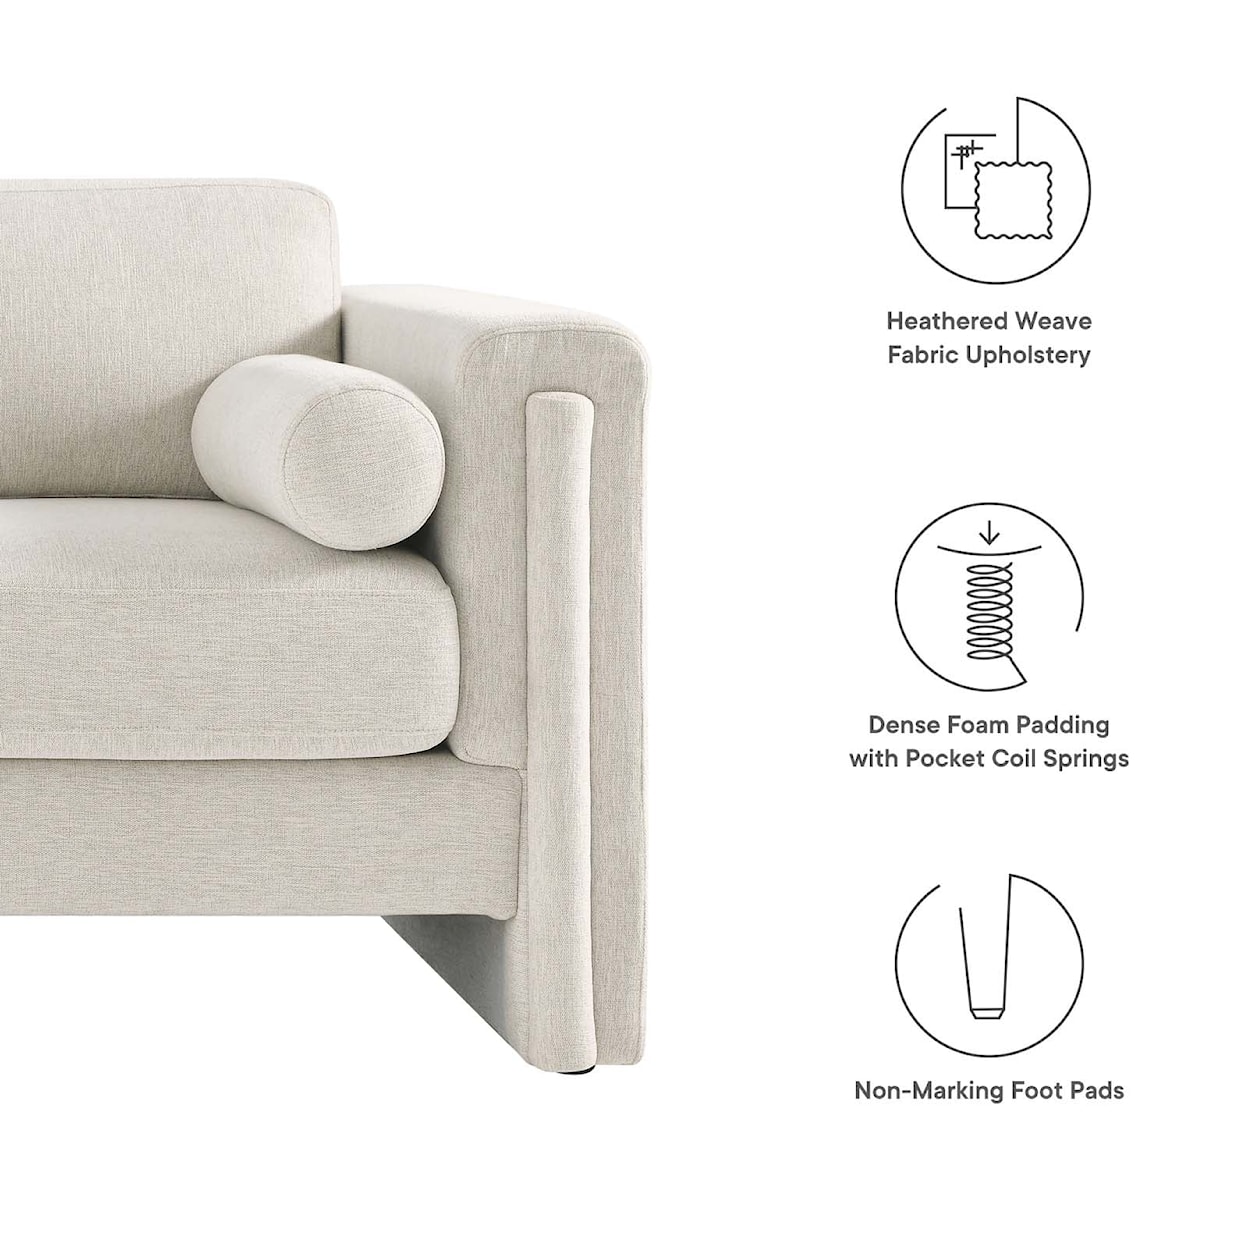 Modway Visible Visible Fabric Sofa